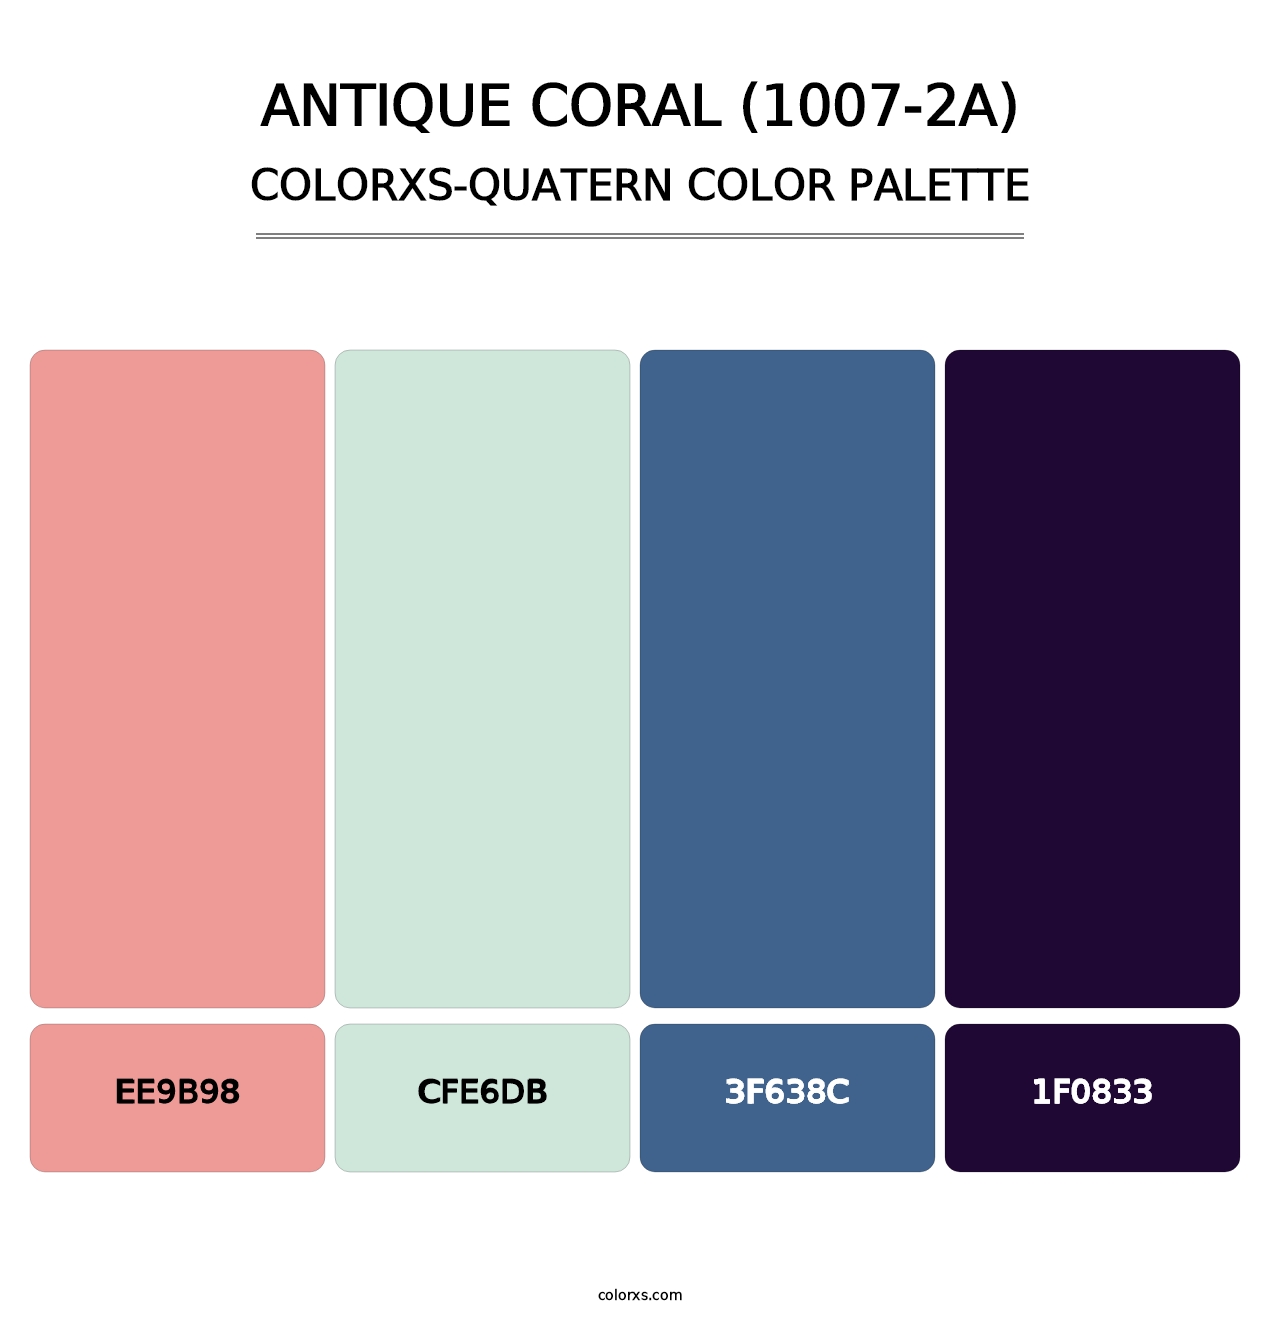 Antique Coral (1007-2A) - Colorxs Quatern Palette